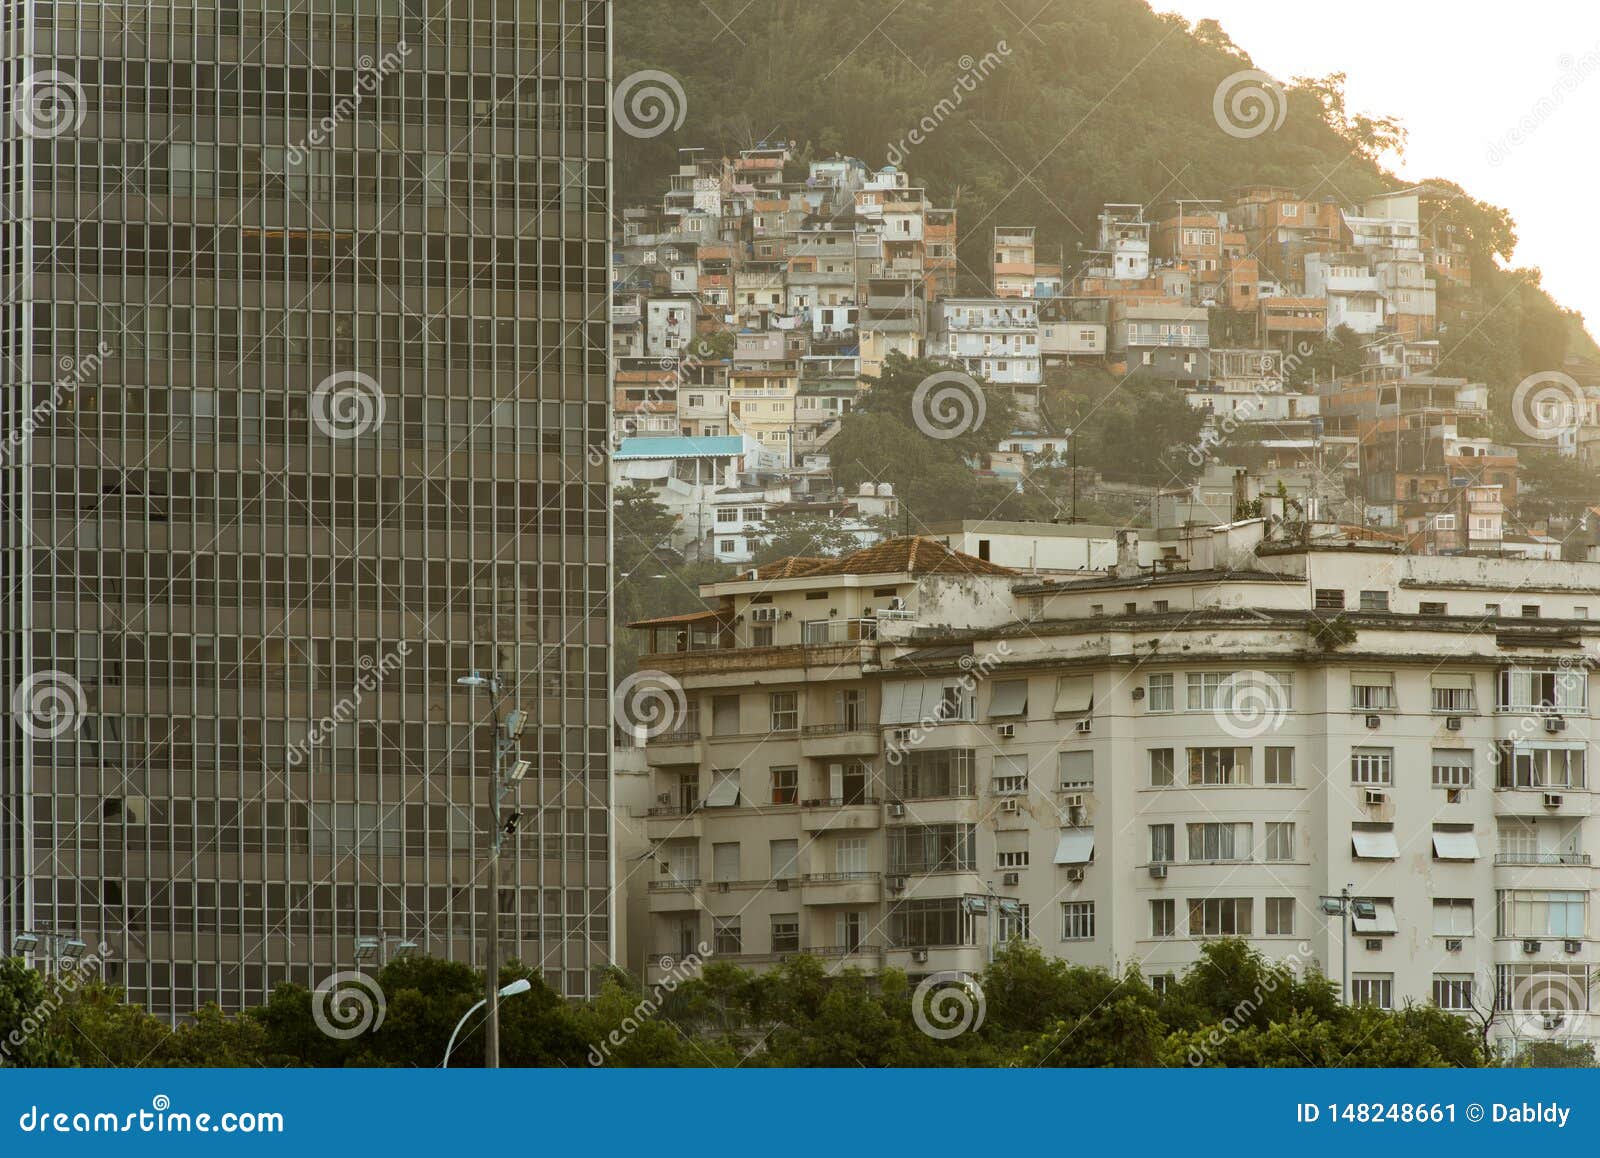 urban contrasts of rio de janeiro city